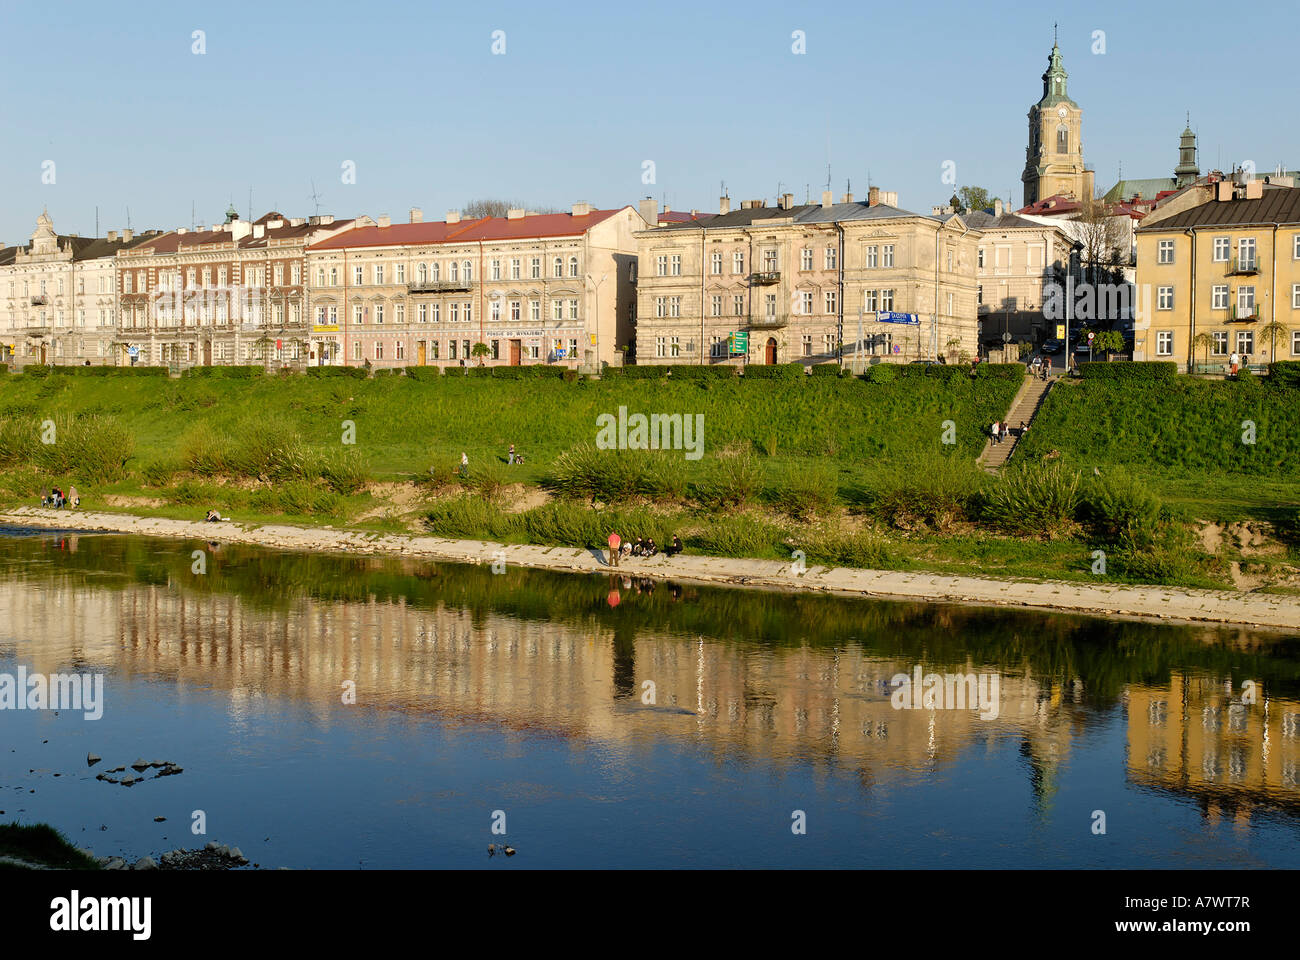 San river, historic old town of Przemysl, Poland Stock Photo